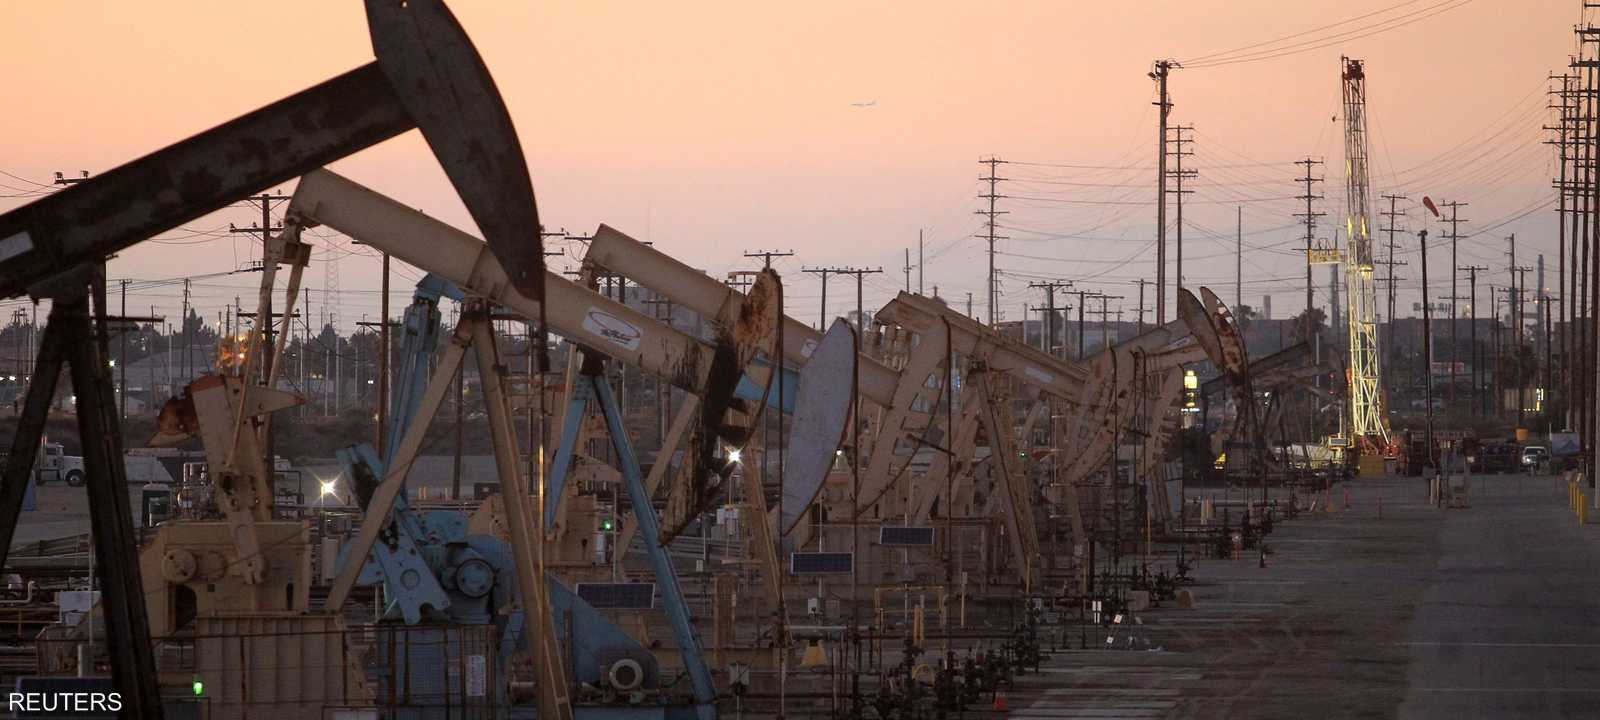 منصات النفط  في حقل ويلمنغتون - لونغ بيتش، كاليفورنيا